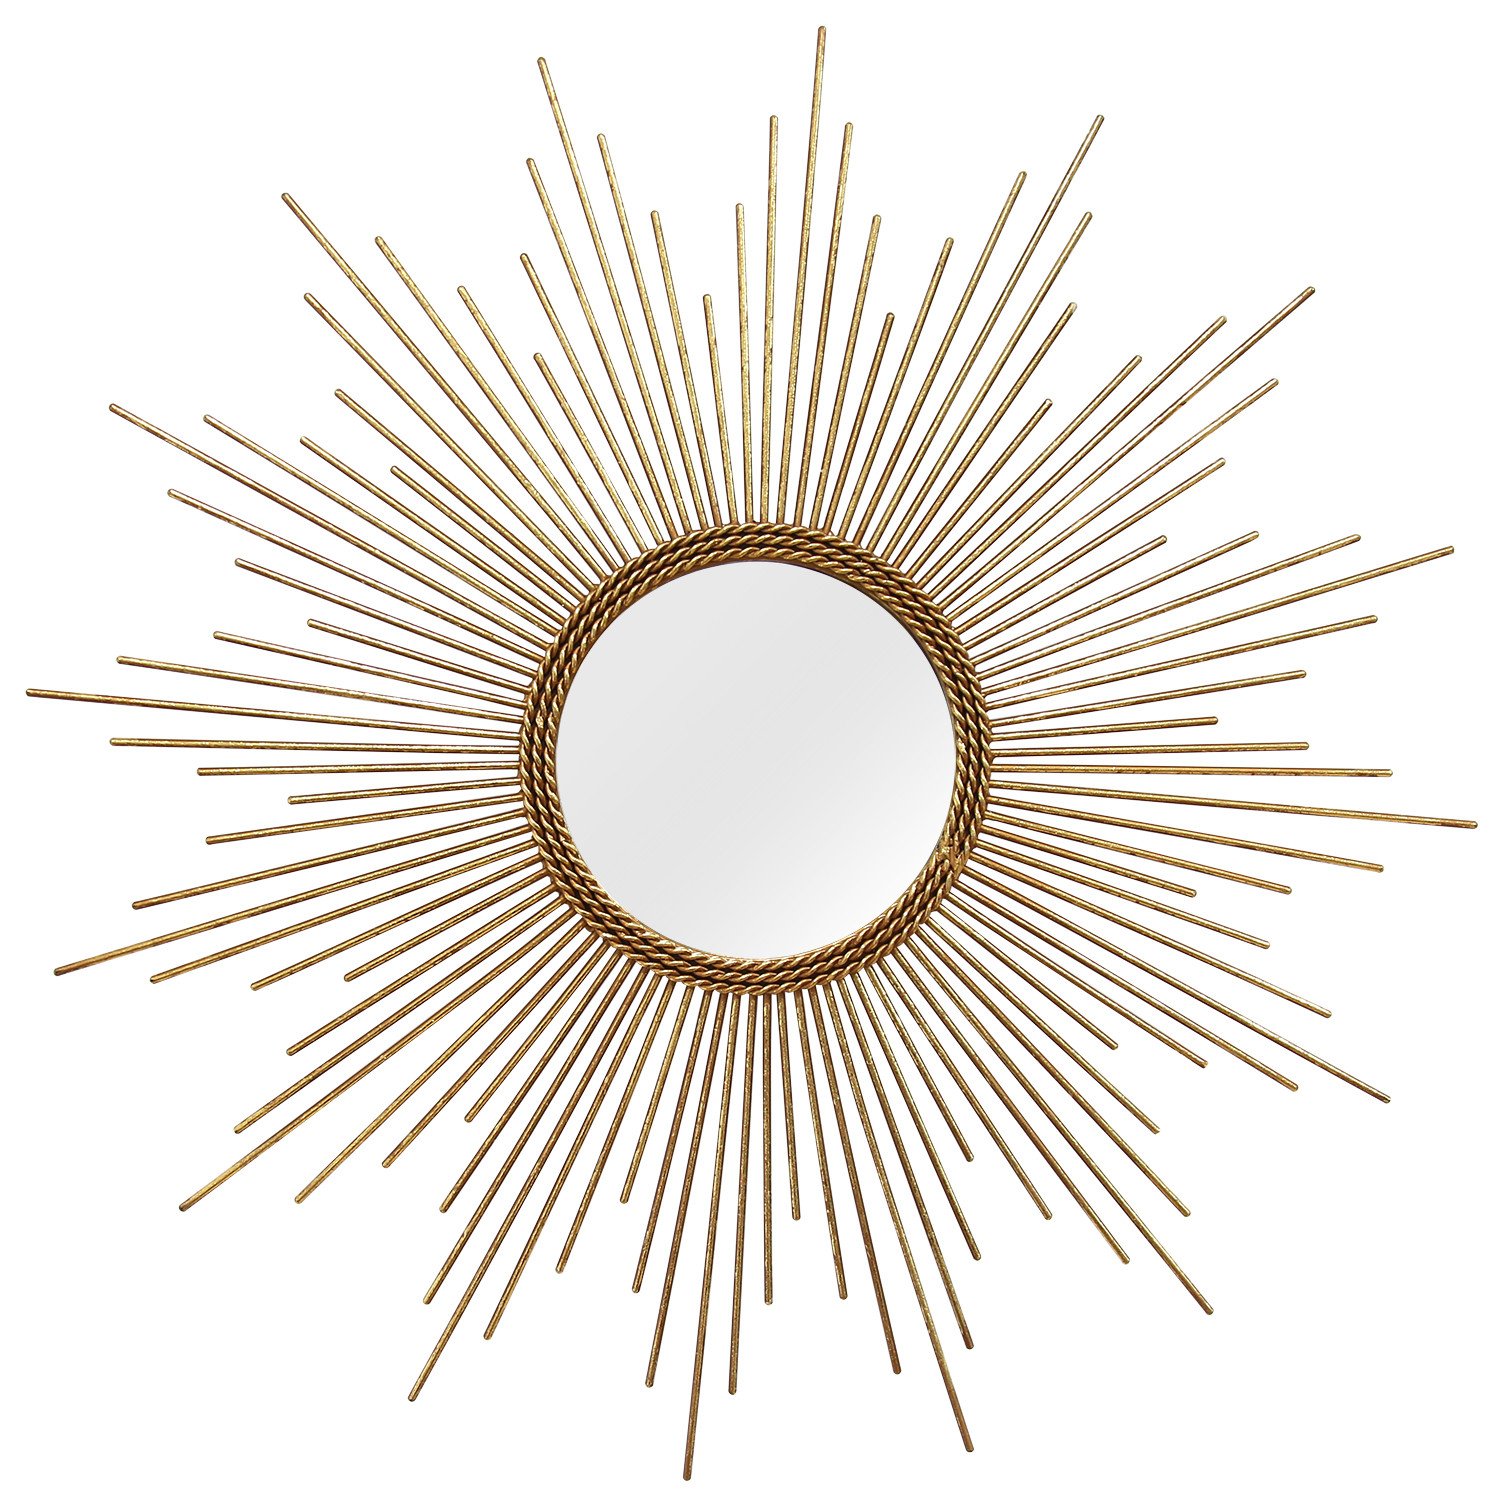 26" Round Gold Metal Sunburst Framed Wall Mirror